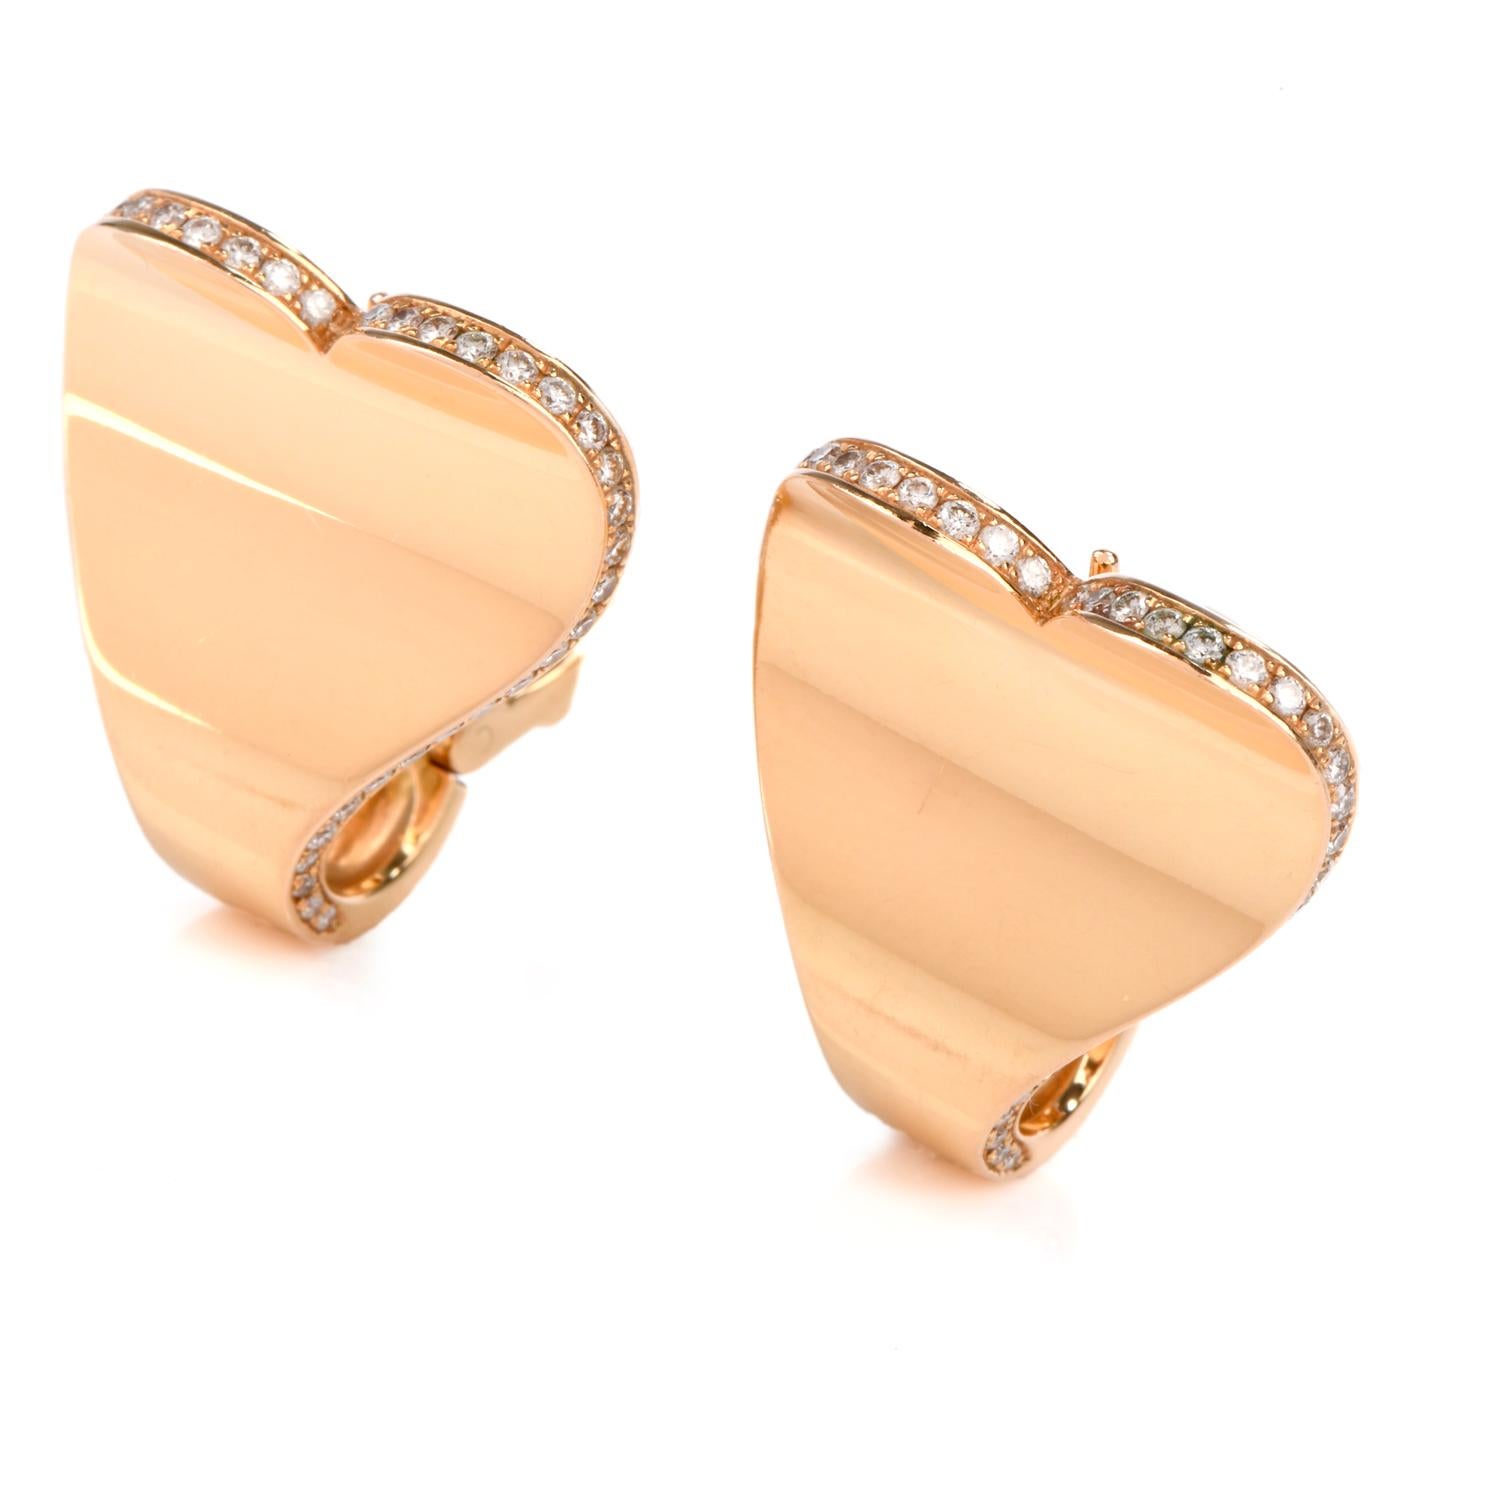 Ces boucles d'oreilles en diamant remplies d'amour de Roger Dubuis ont été inspirées par un motif en forme de cœur

et fabriqué en or jaune 18 carats.

100 diamants ronds de taille brillant ornent les bords extérieurs et pèsent environ 1,00 carat.